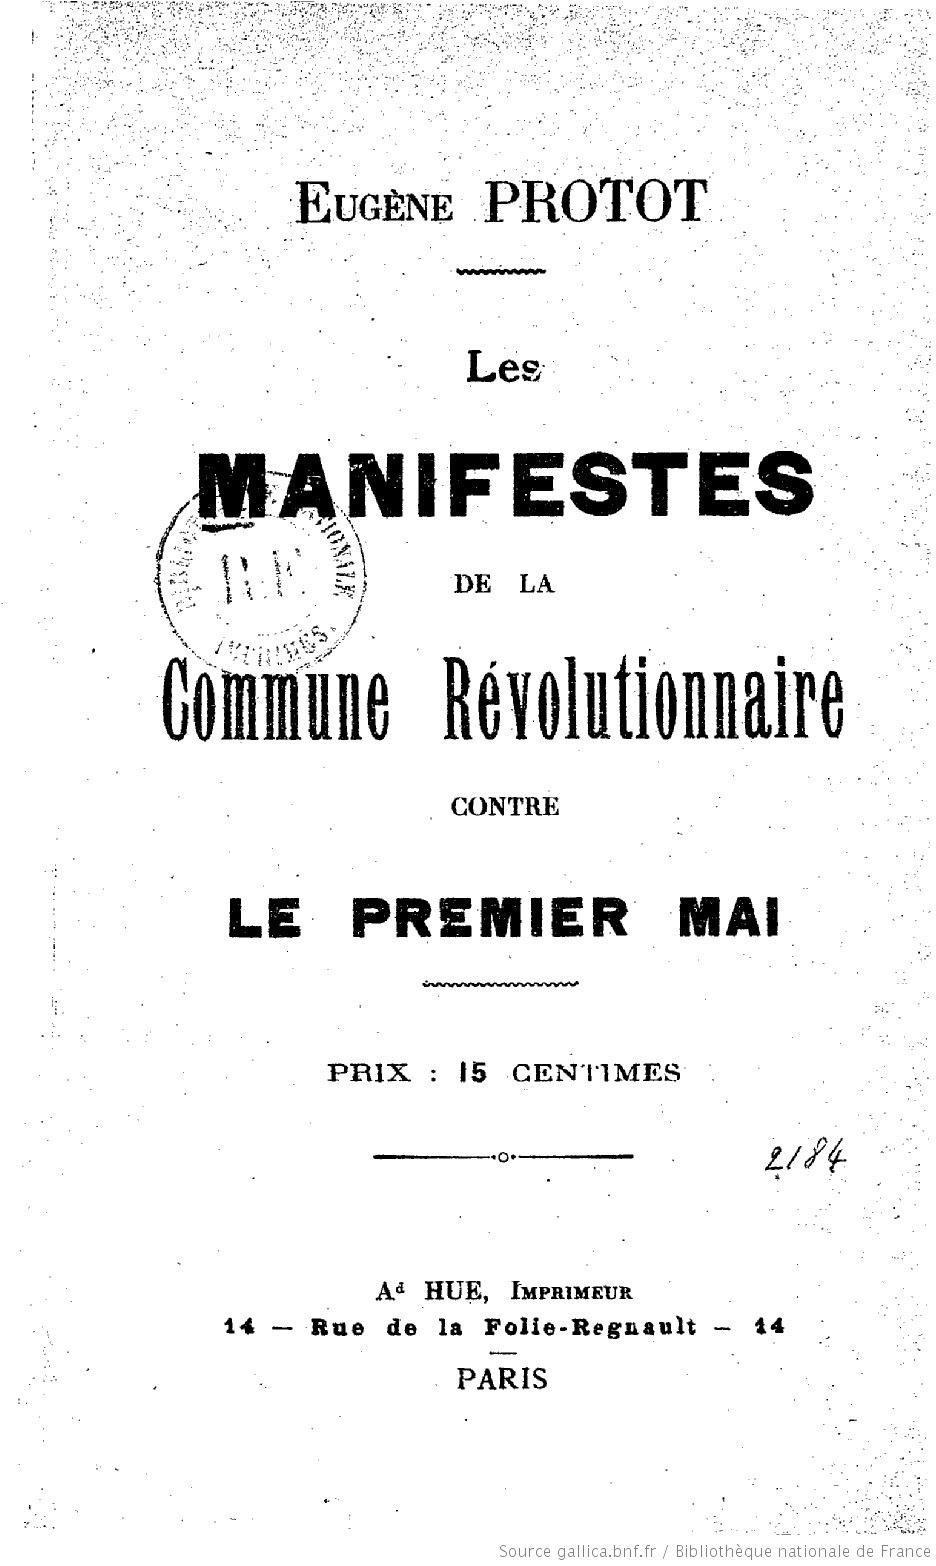 Eugène Protot, Les manifestes de la Commune révolutionnaire contre le 1er mai, Ad. Hue, Imprimeur, Paris. (Source BNF - Gallica)